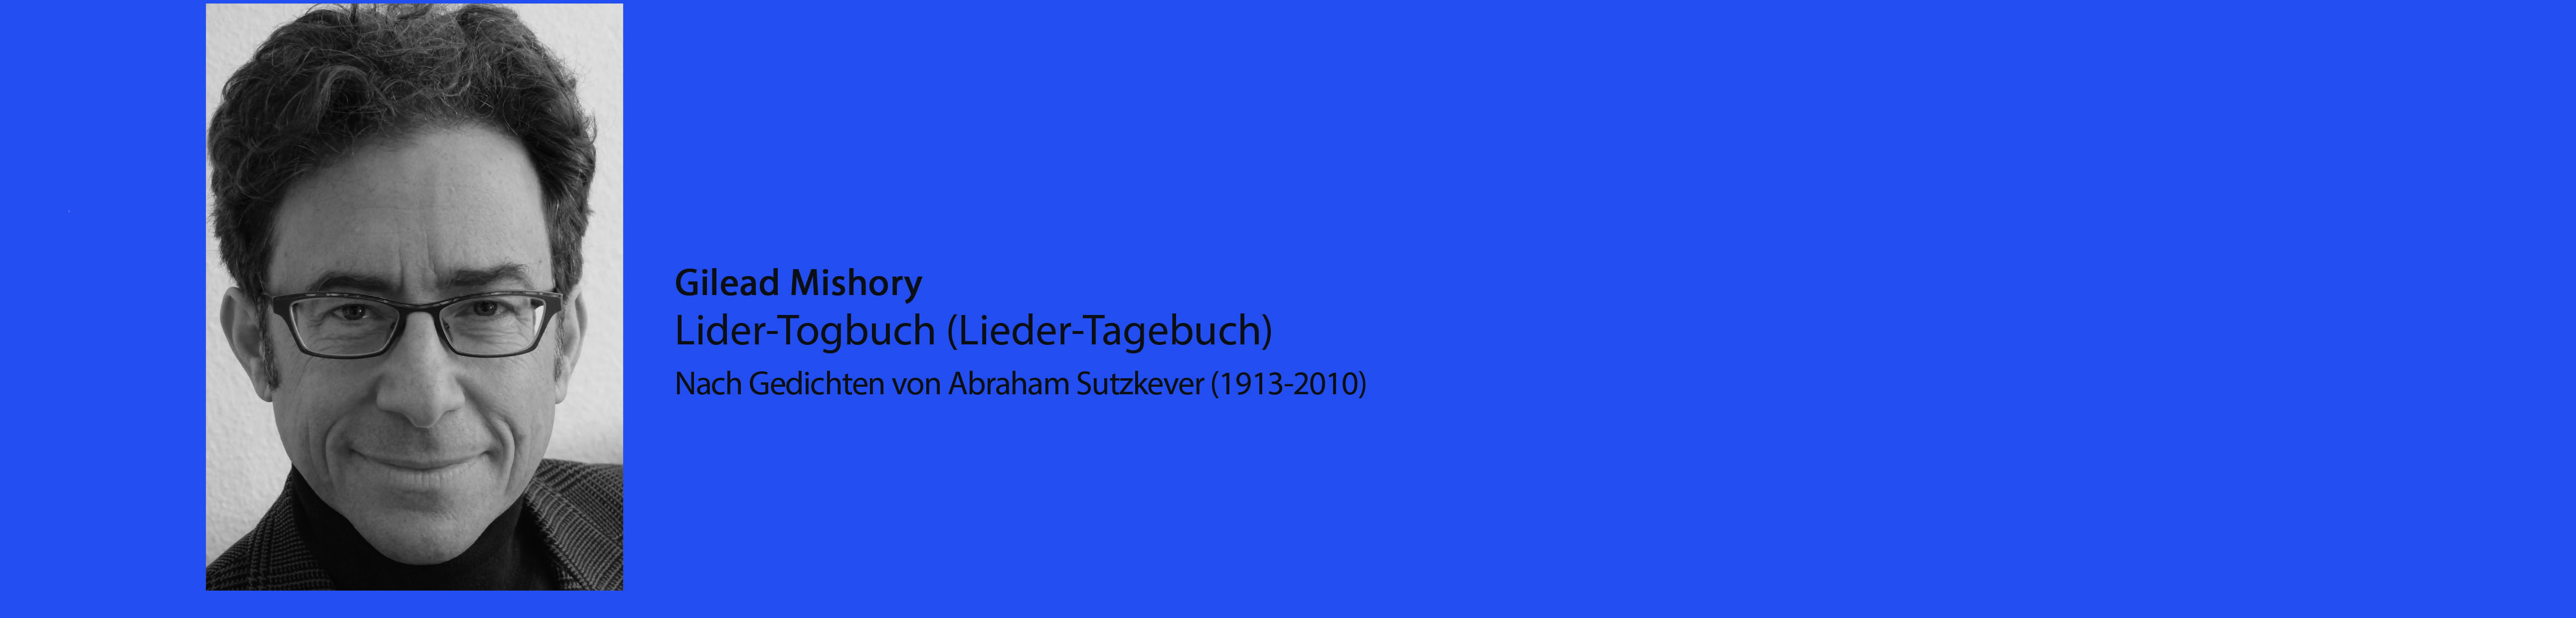 Breisach_Lider-Togbuch (Liedertagebuch) nach Gedichten von Abraham Sutzkever